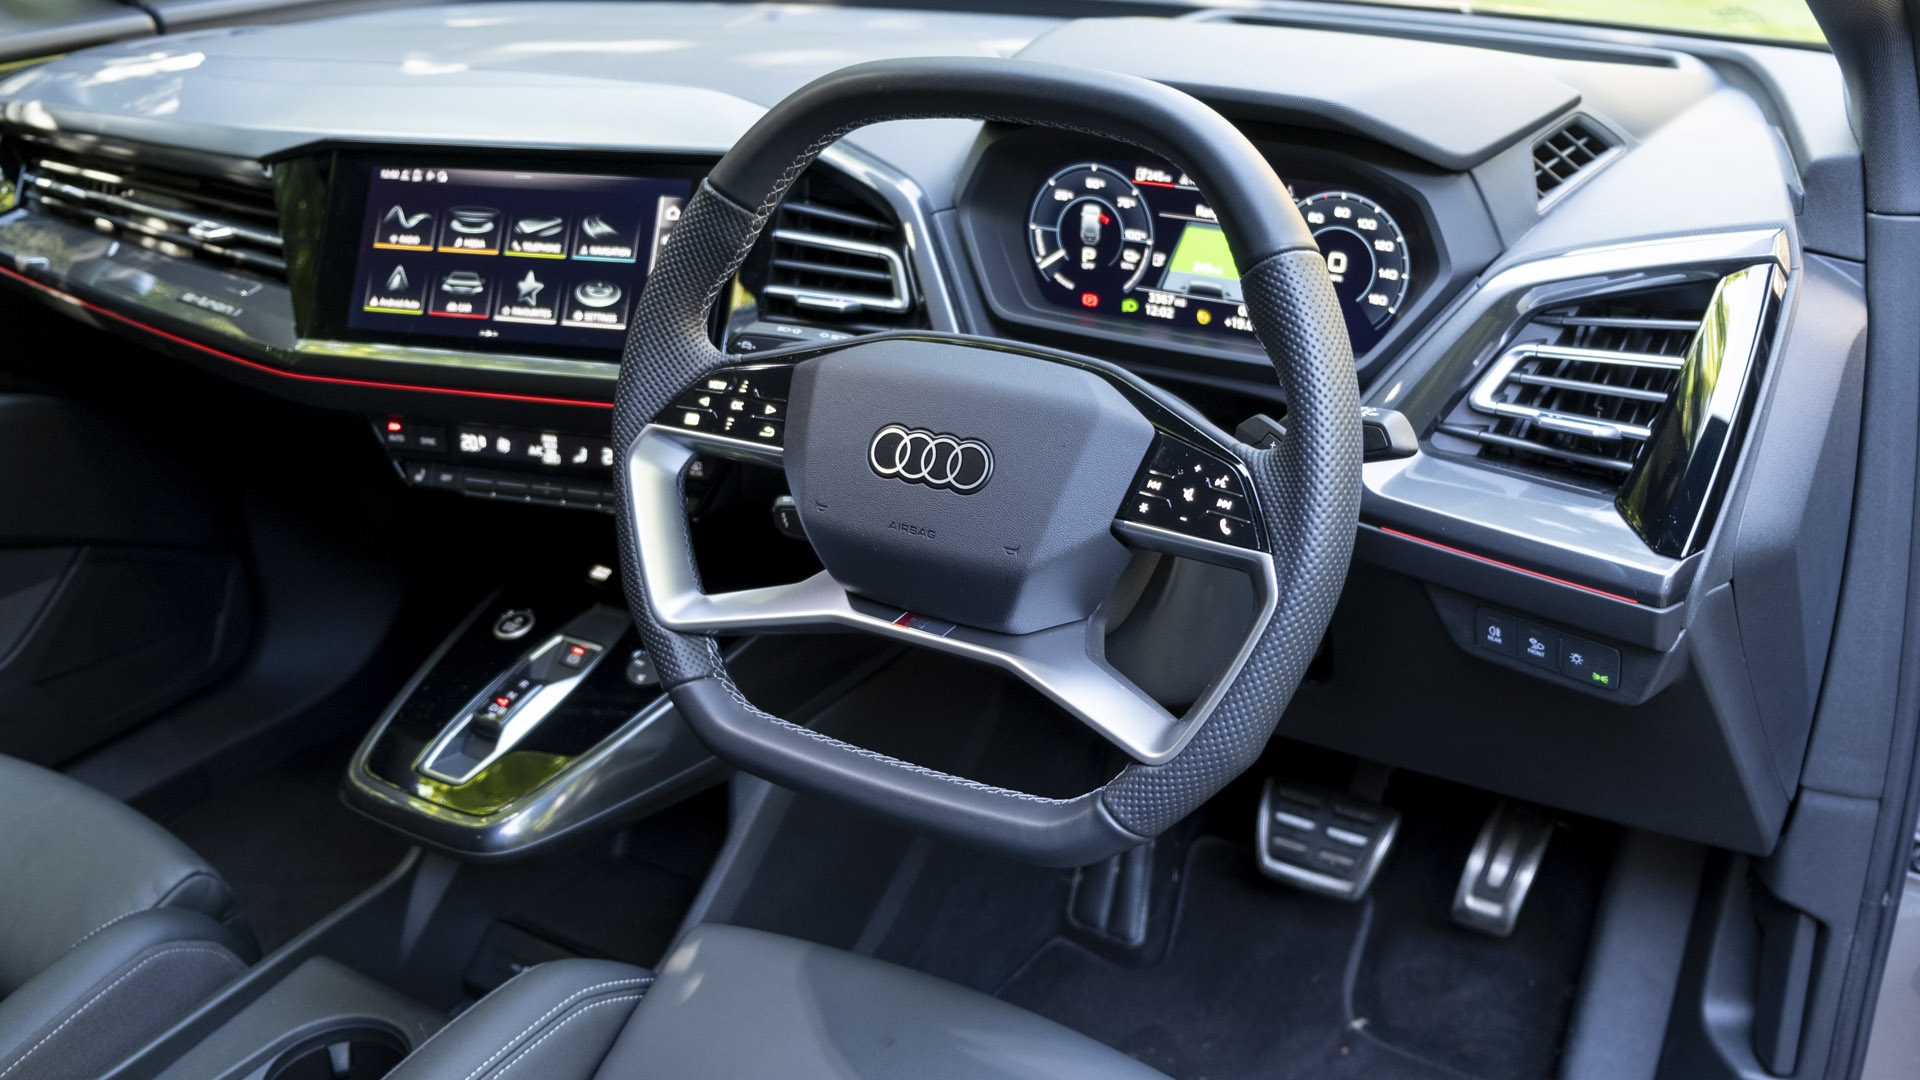 Audi Q4 e-tron cabin design